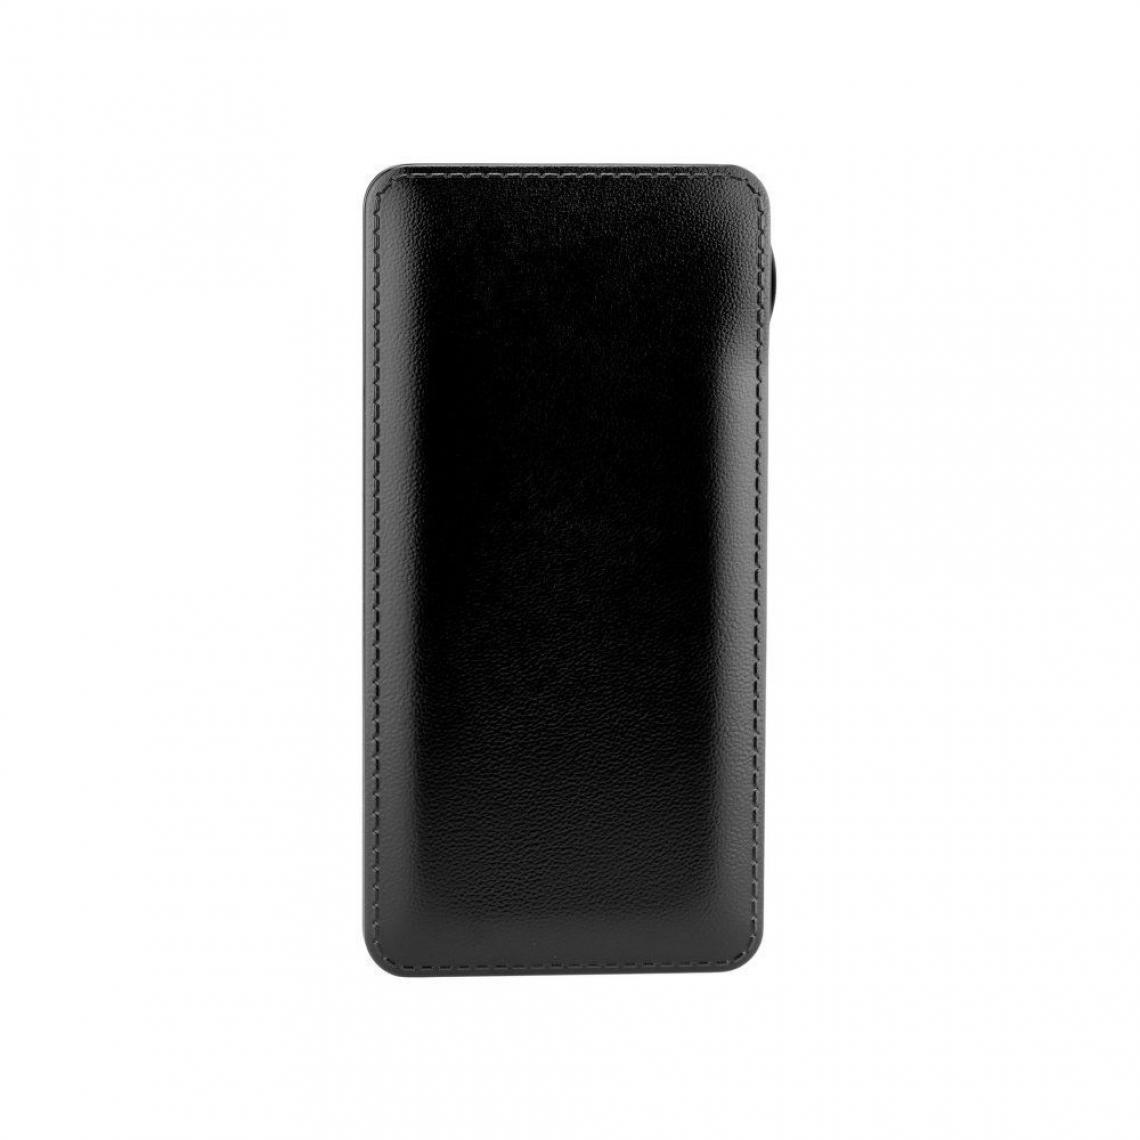 Ozzzo - Chargeur batterie externe 20000 mAh powerbank ozzzo noir pour Sharp B10 - Autres accessoires smartphone